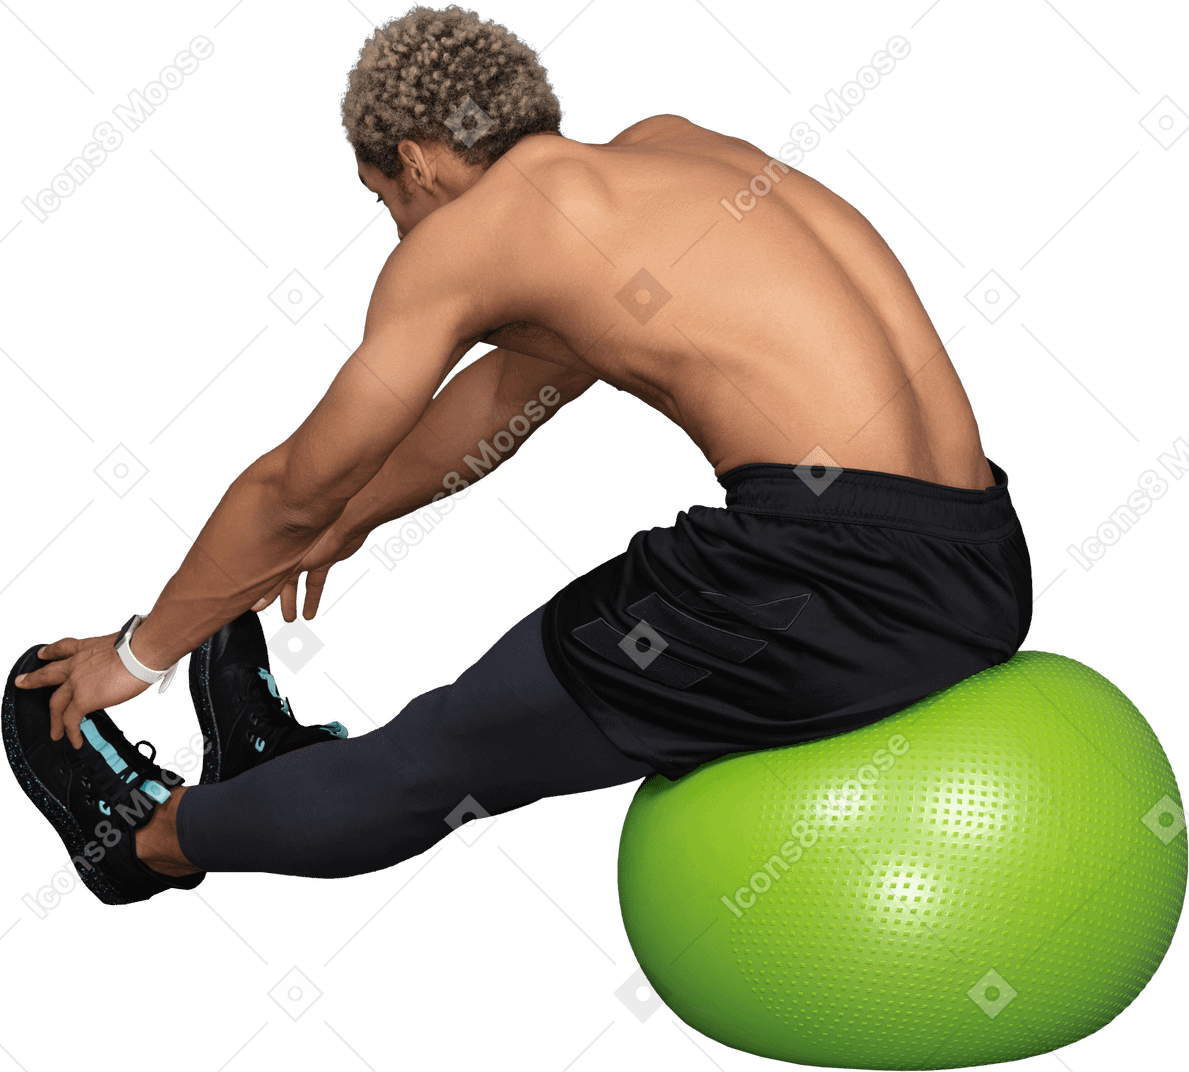 Трехчетвертный вид сзади афро-мужчины без рубашки, растягивающегося, сидя на зеленом спортивном мяче